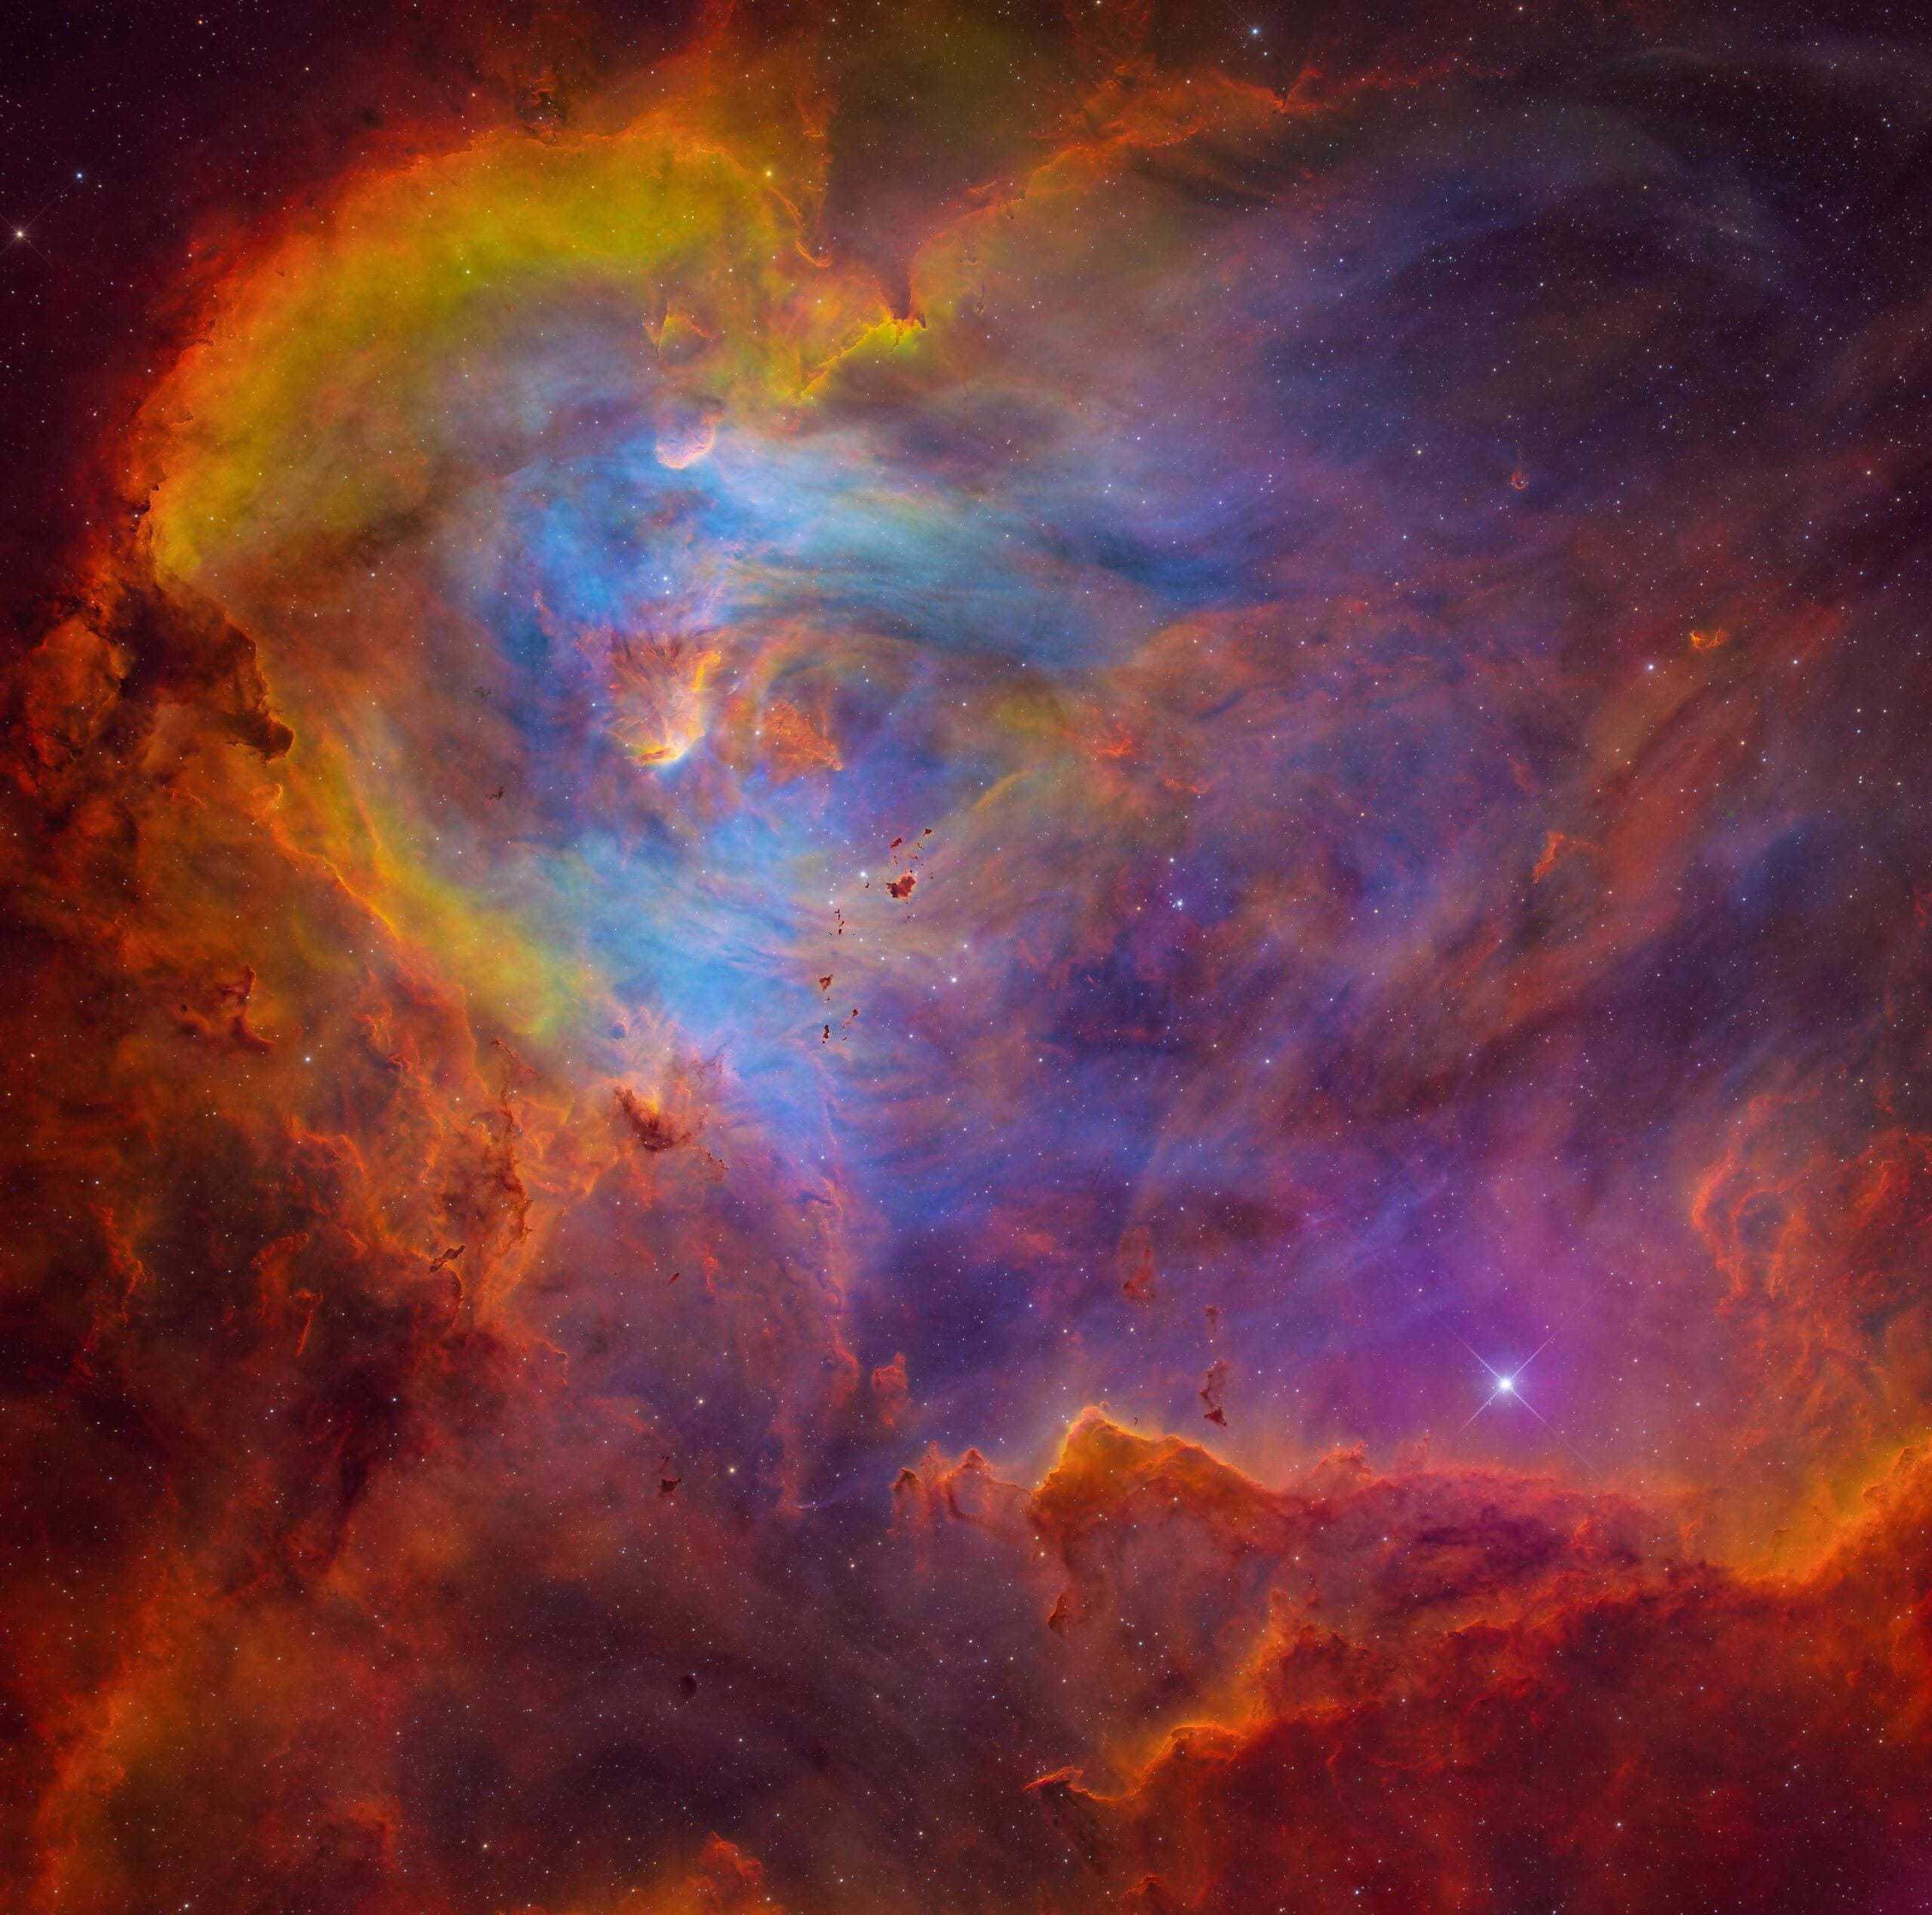 Purple, red, and yellow nebula